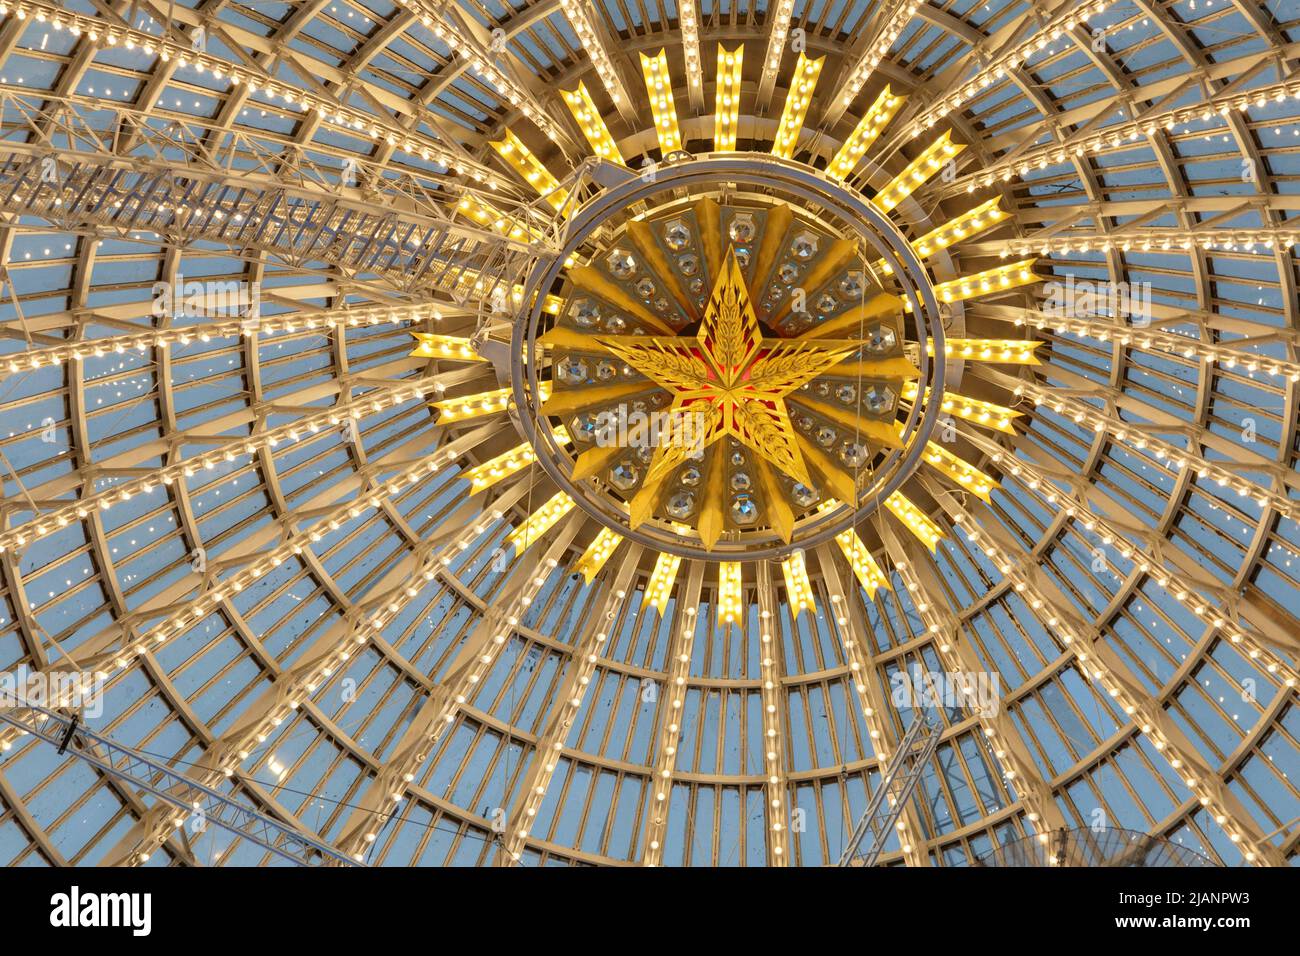 Moscou, Russie - 28 novembre 2018 : dôme en verre du pavillon cosmos de l'espace au VDNH - exposition des réalisations de l'économie nationale Banque D'Images